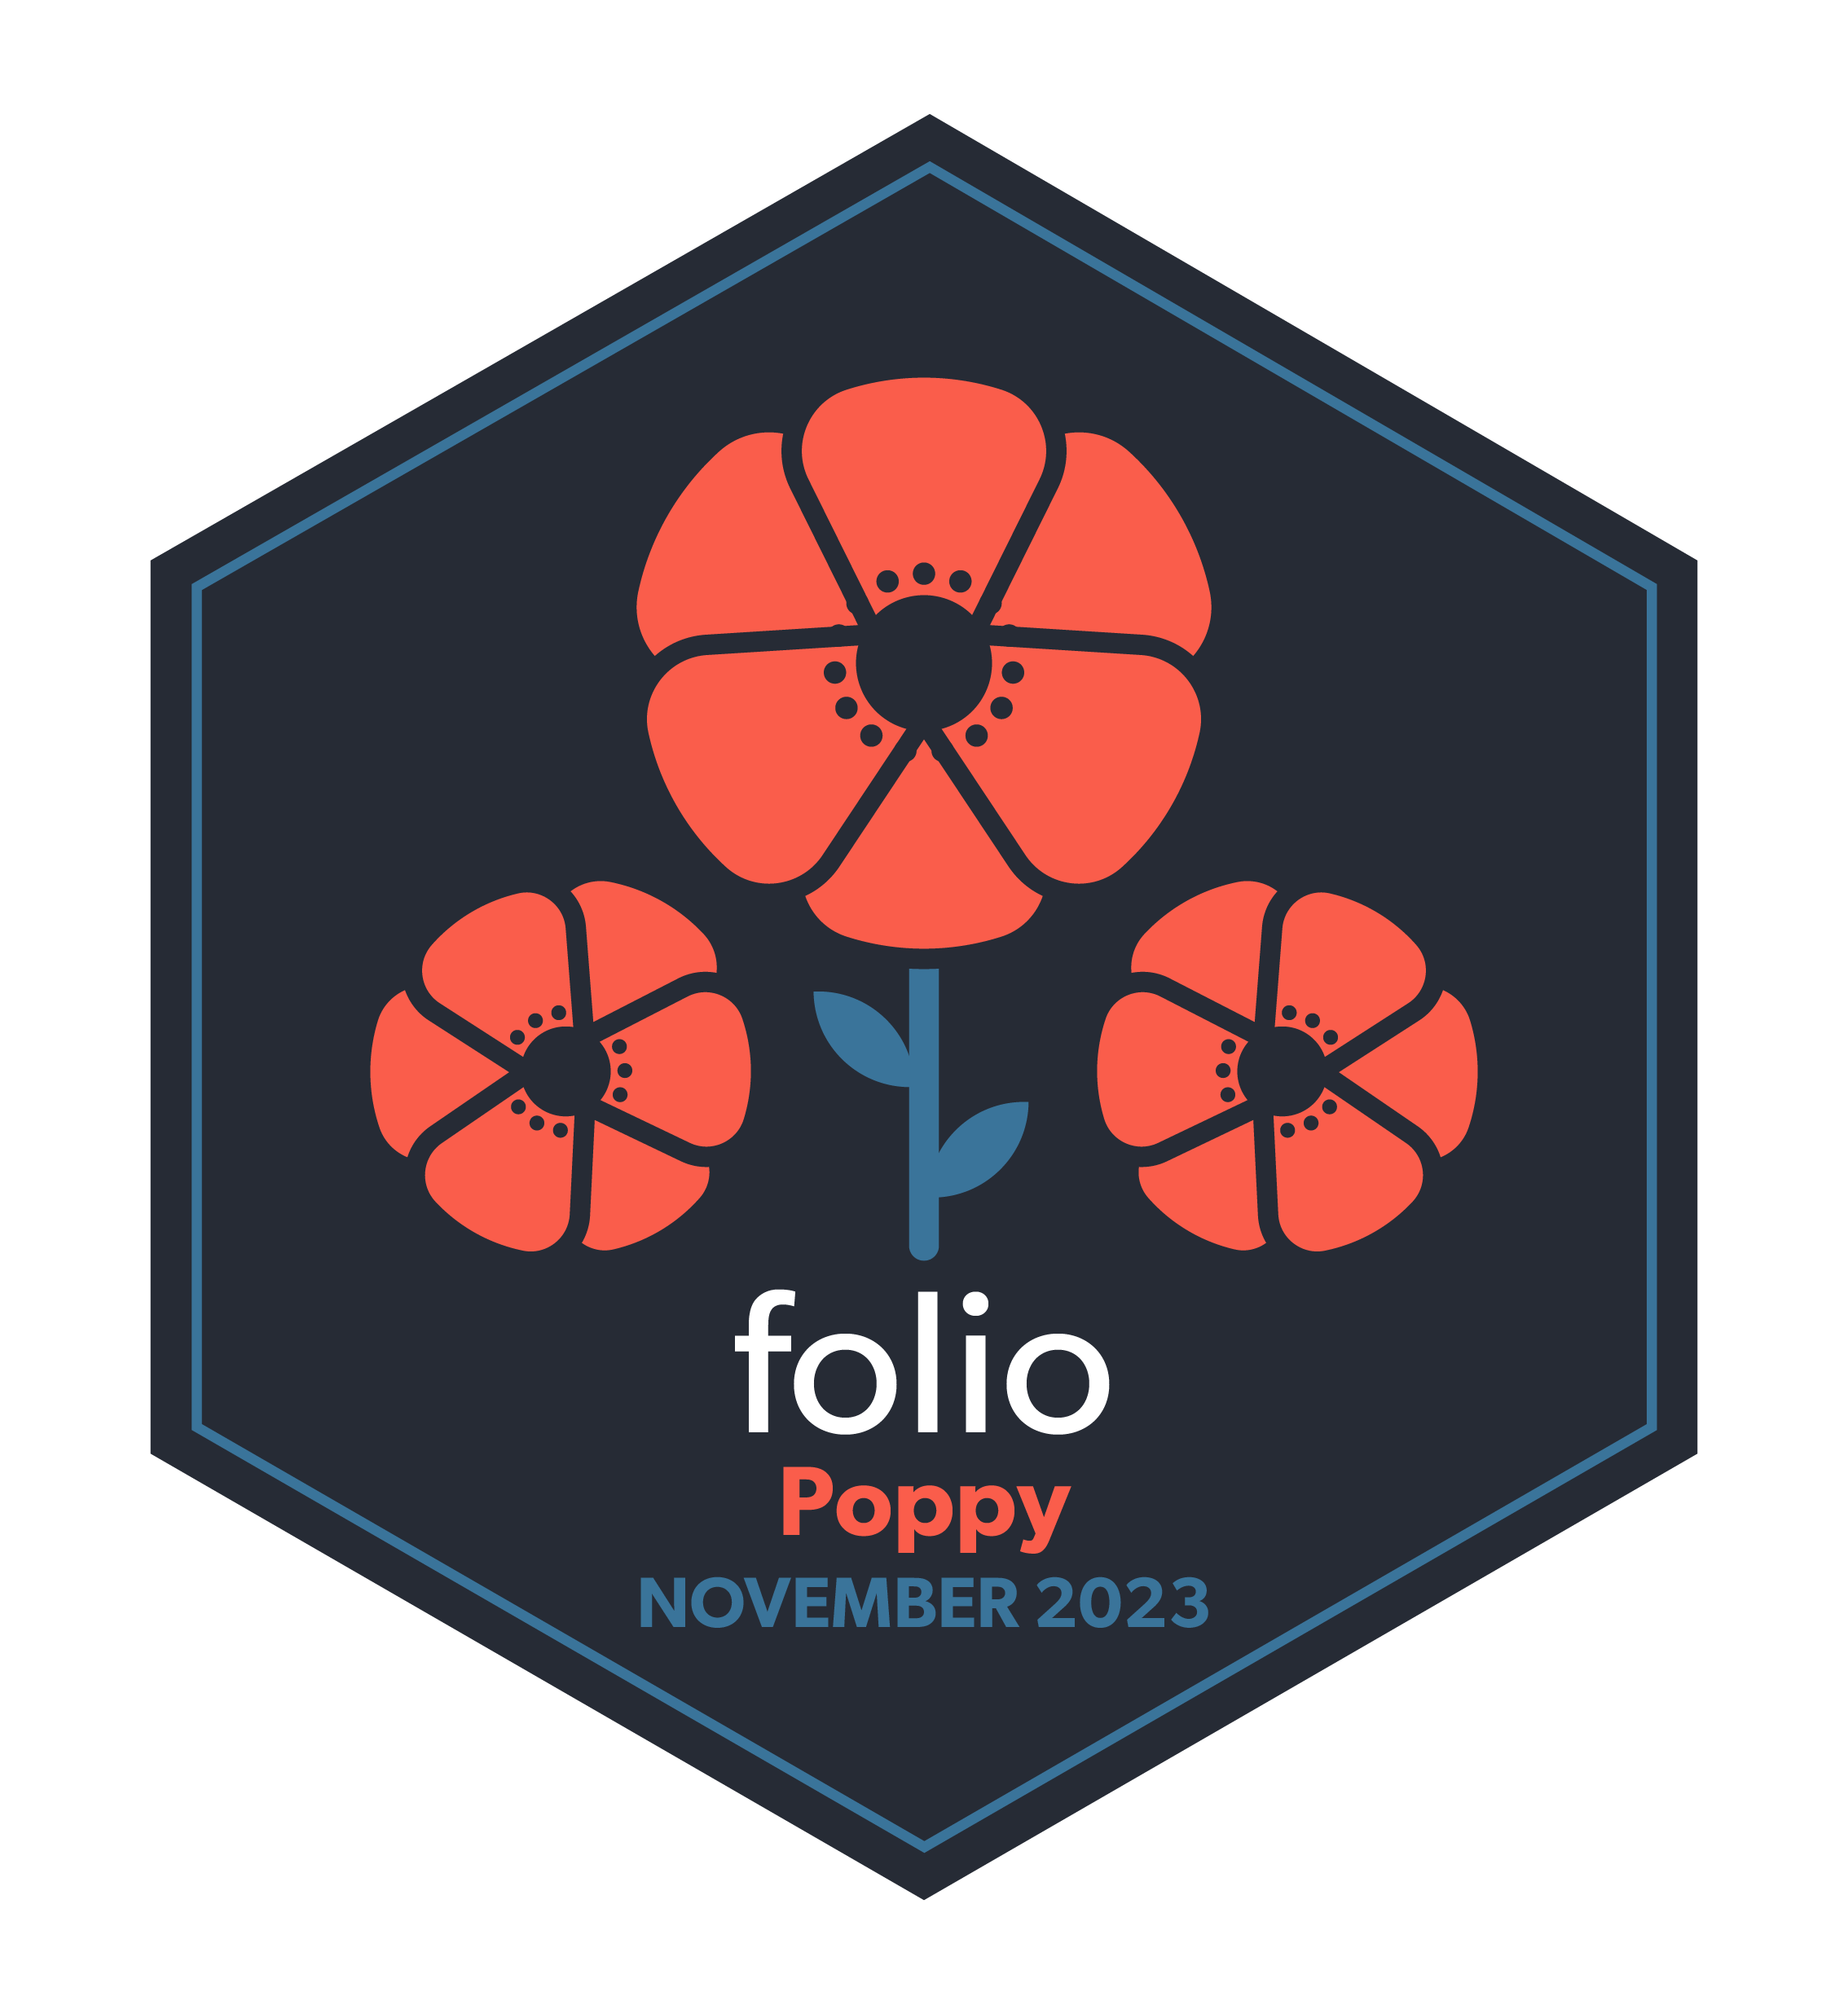 FOLIO Poppy November 2023